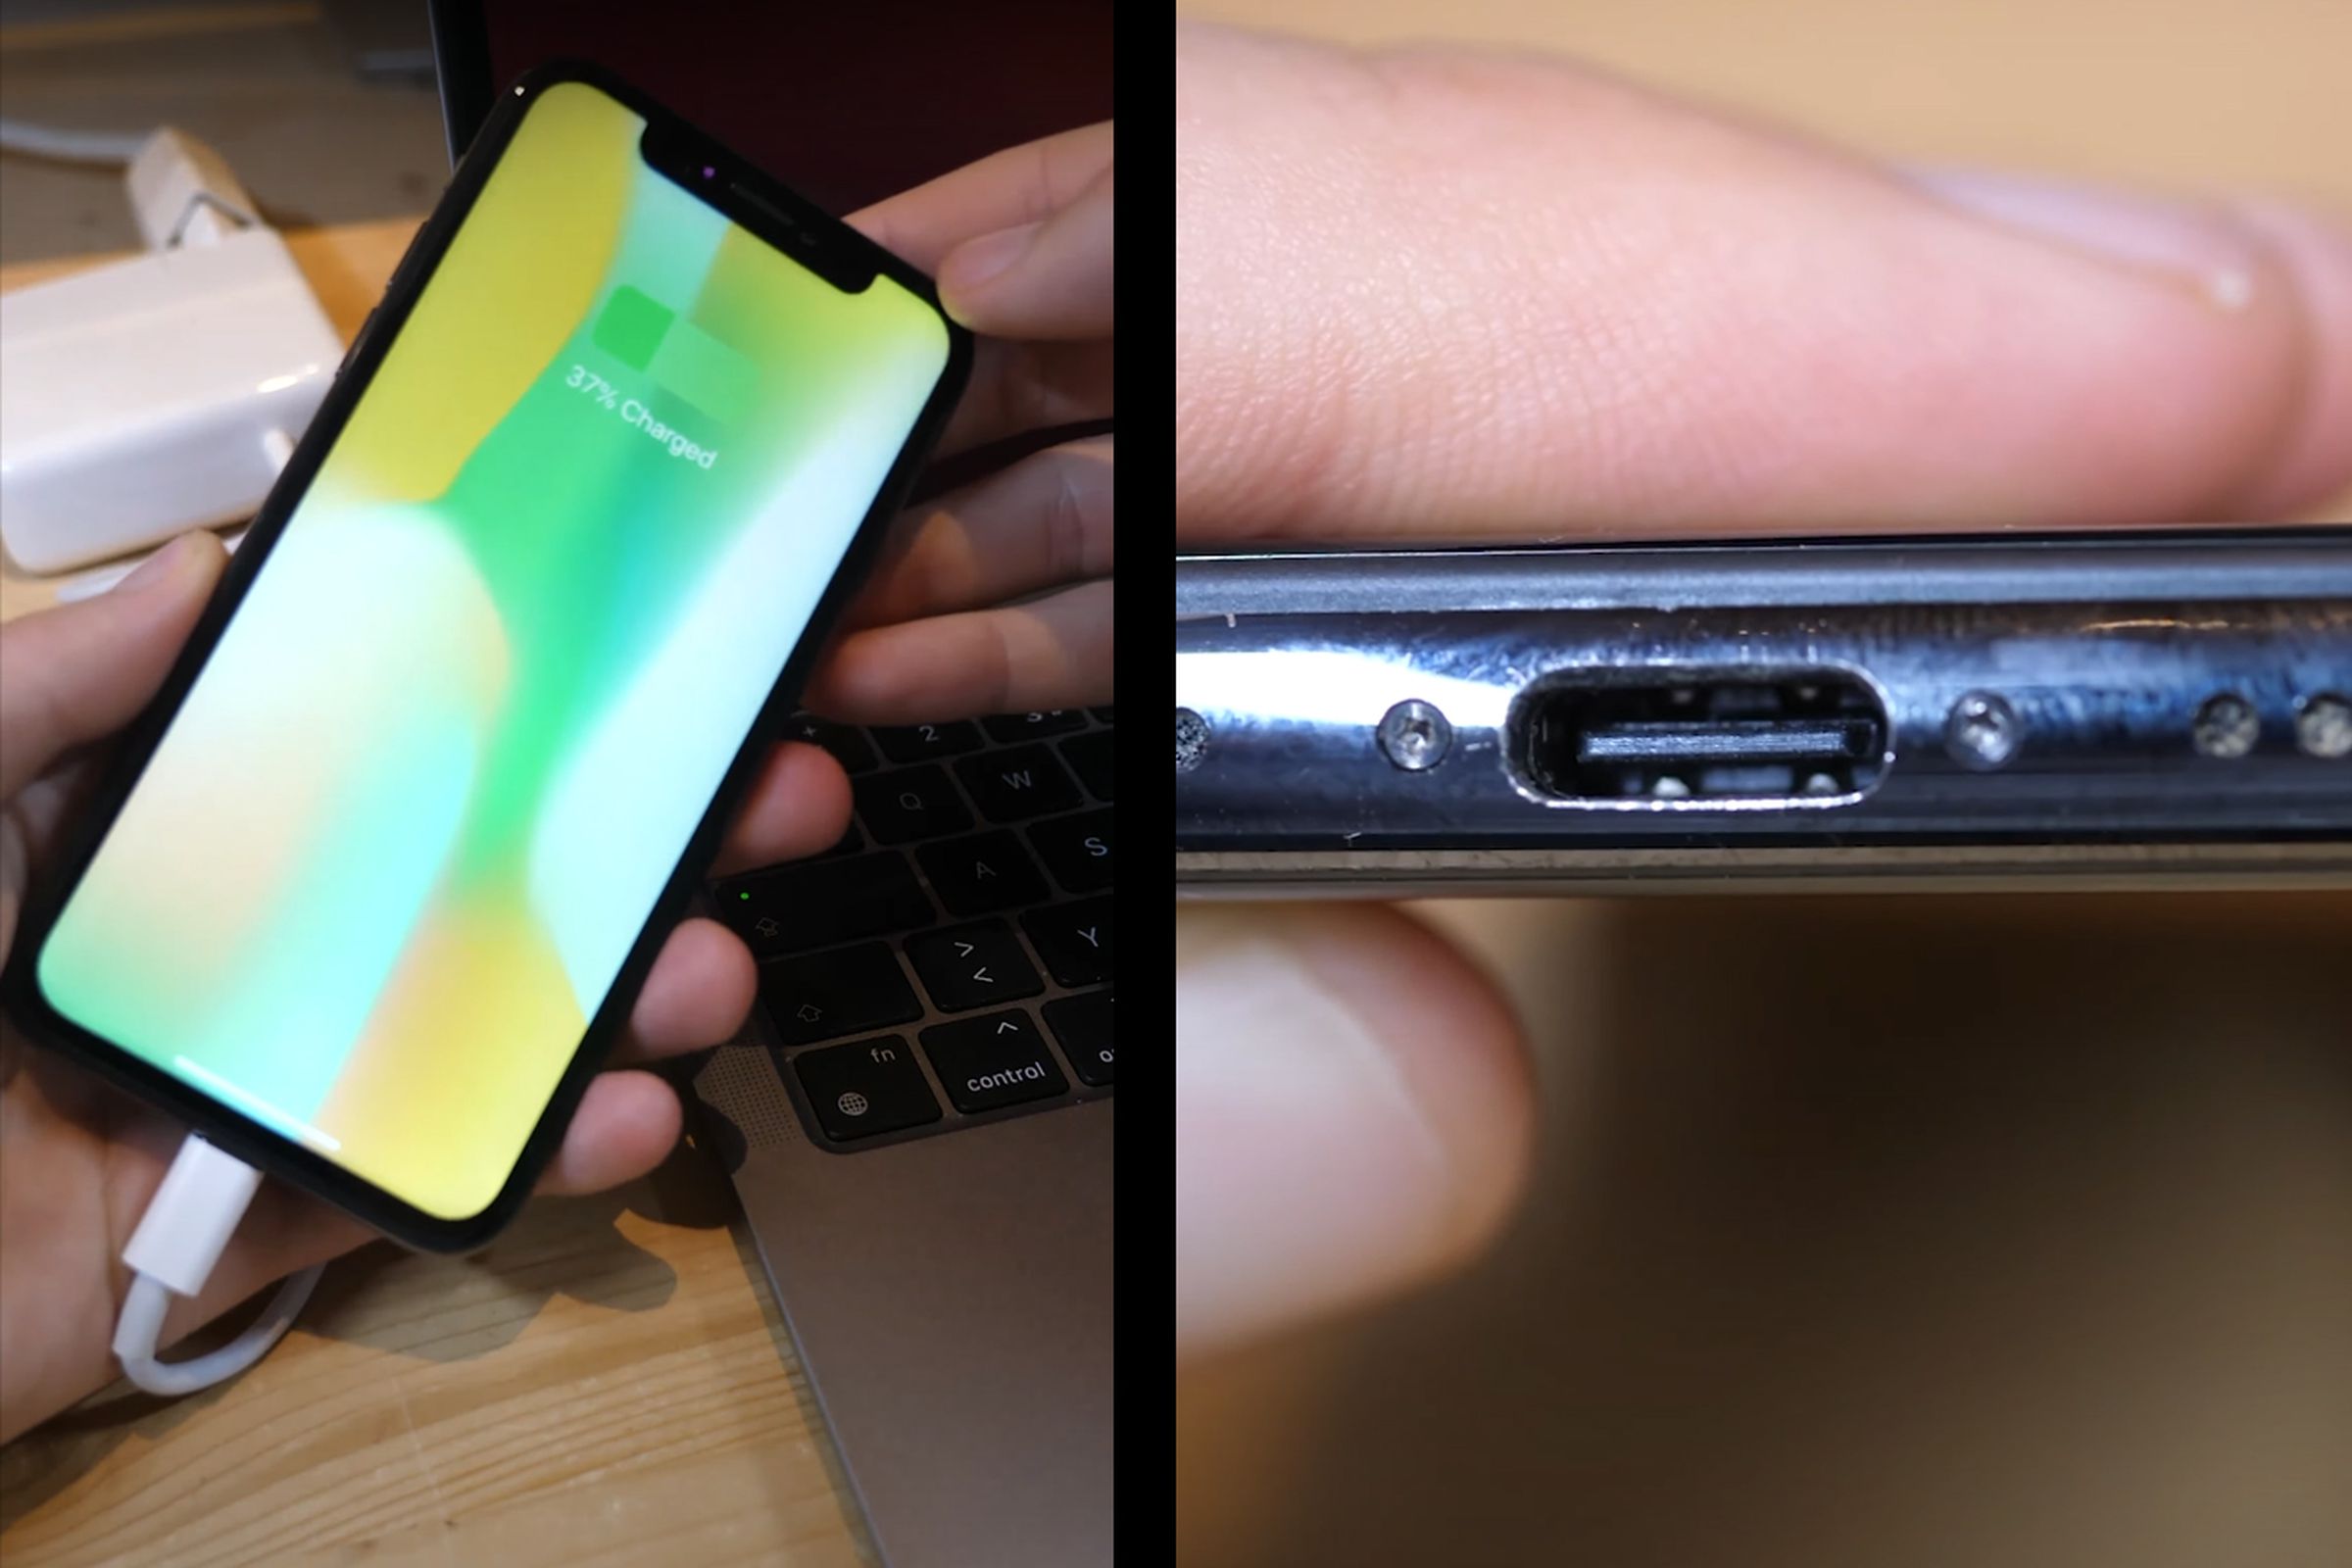 The USB-C port on an iPhone X.